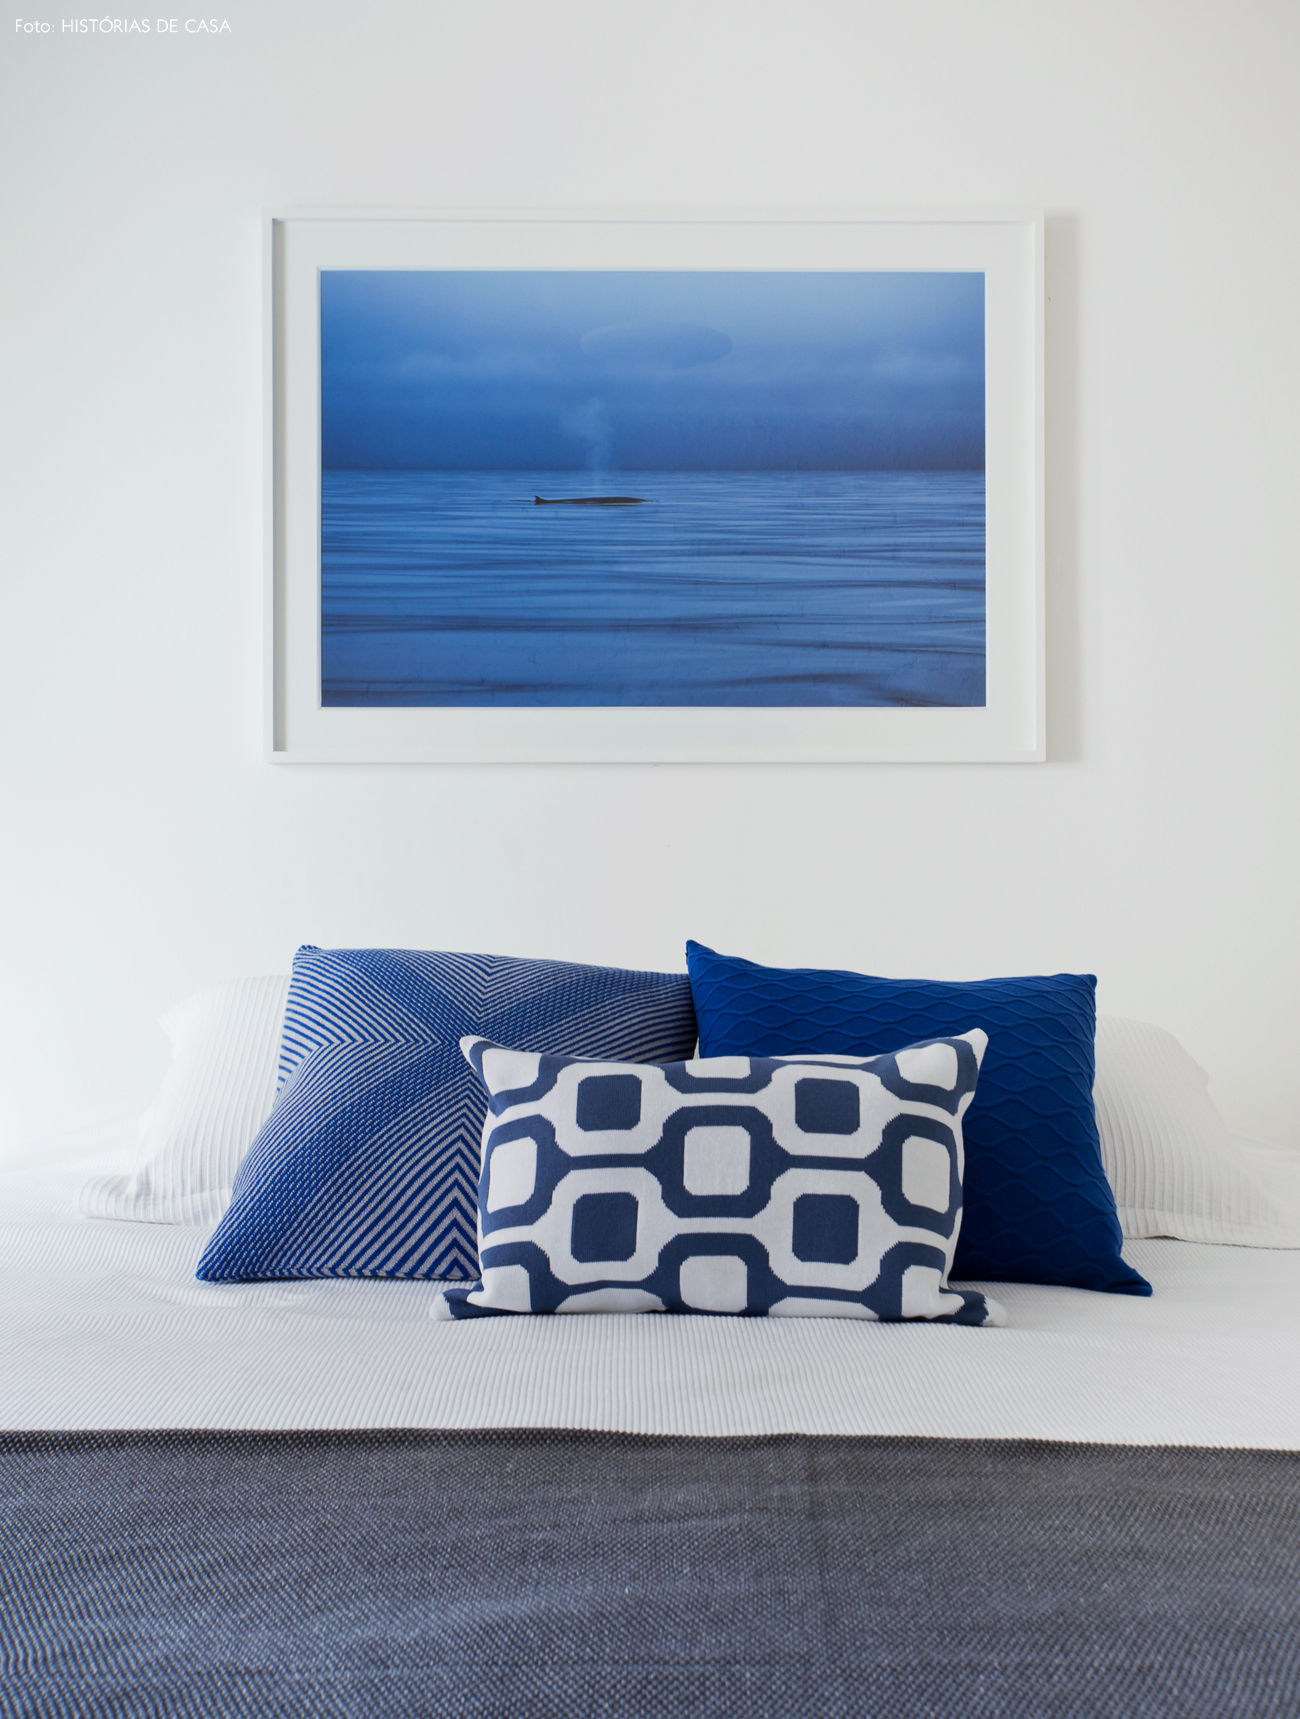 31-decoracao-quarto-branco-detalhes-em-azul-almofadas